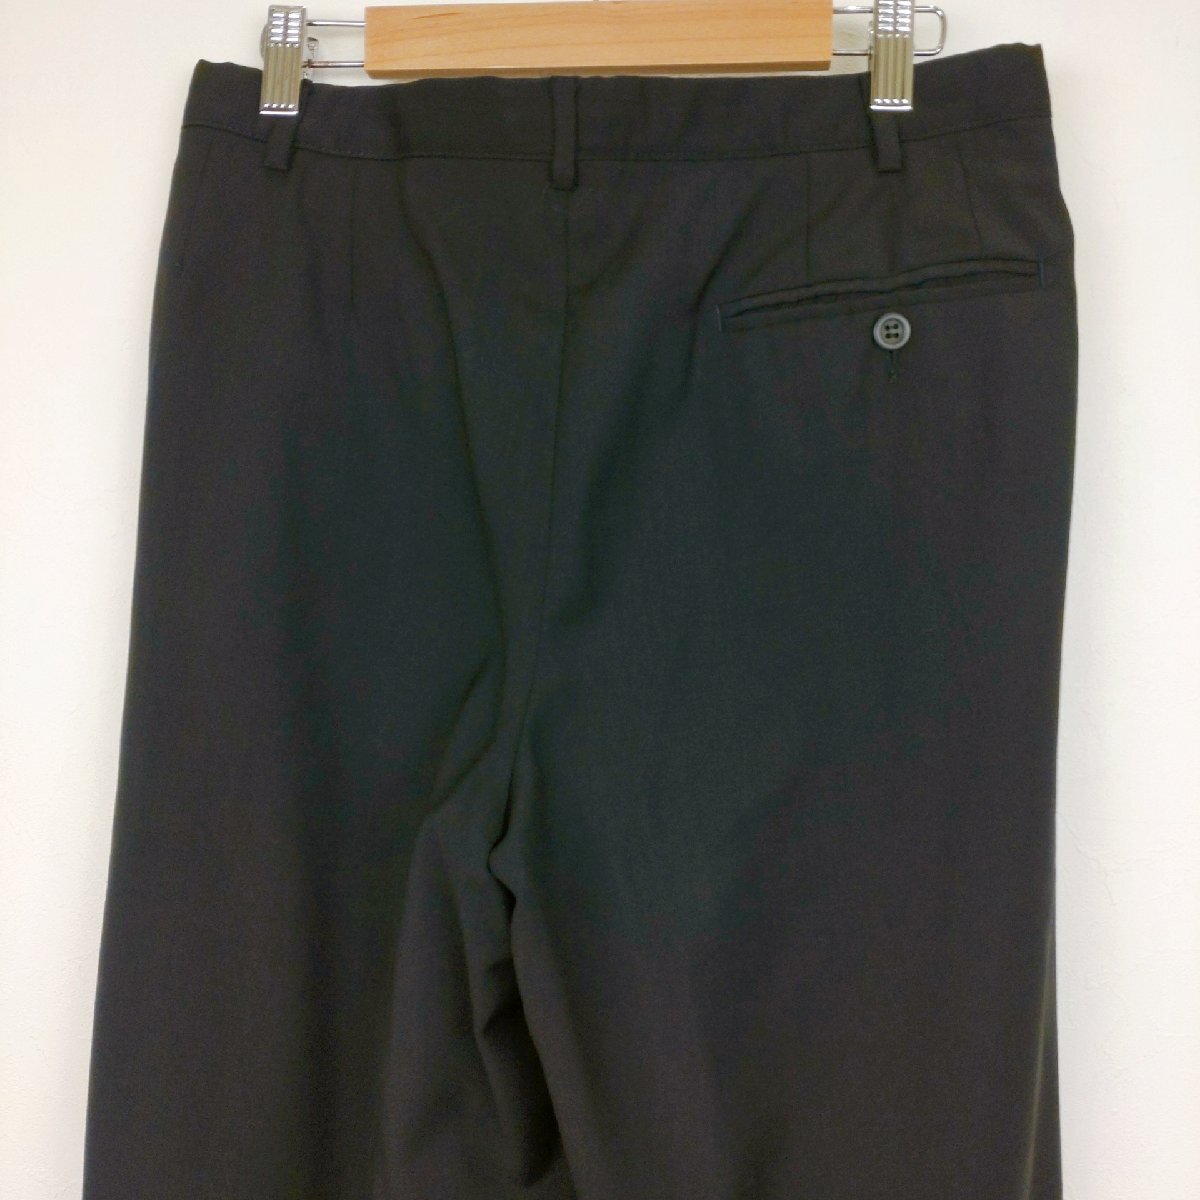 GIANN VERSACE スラックス サイズ:44 ブラック 無地 春夏物 パンツ ツータック メンズ ジャンニベルサーチの画像6